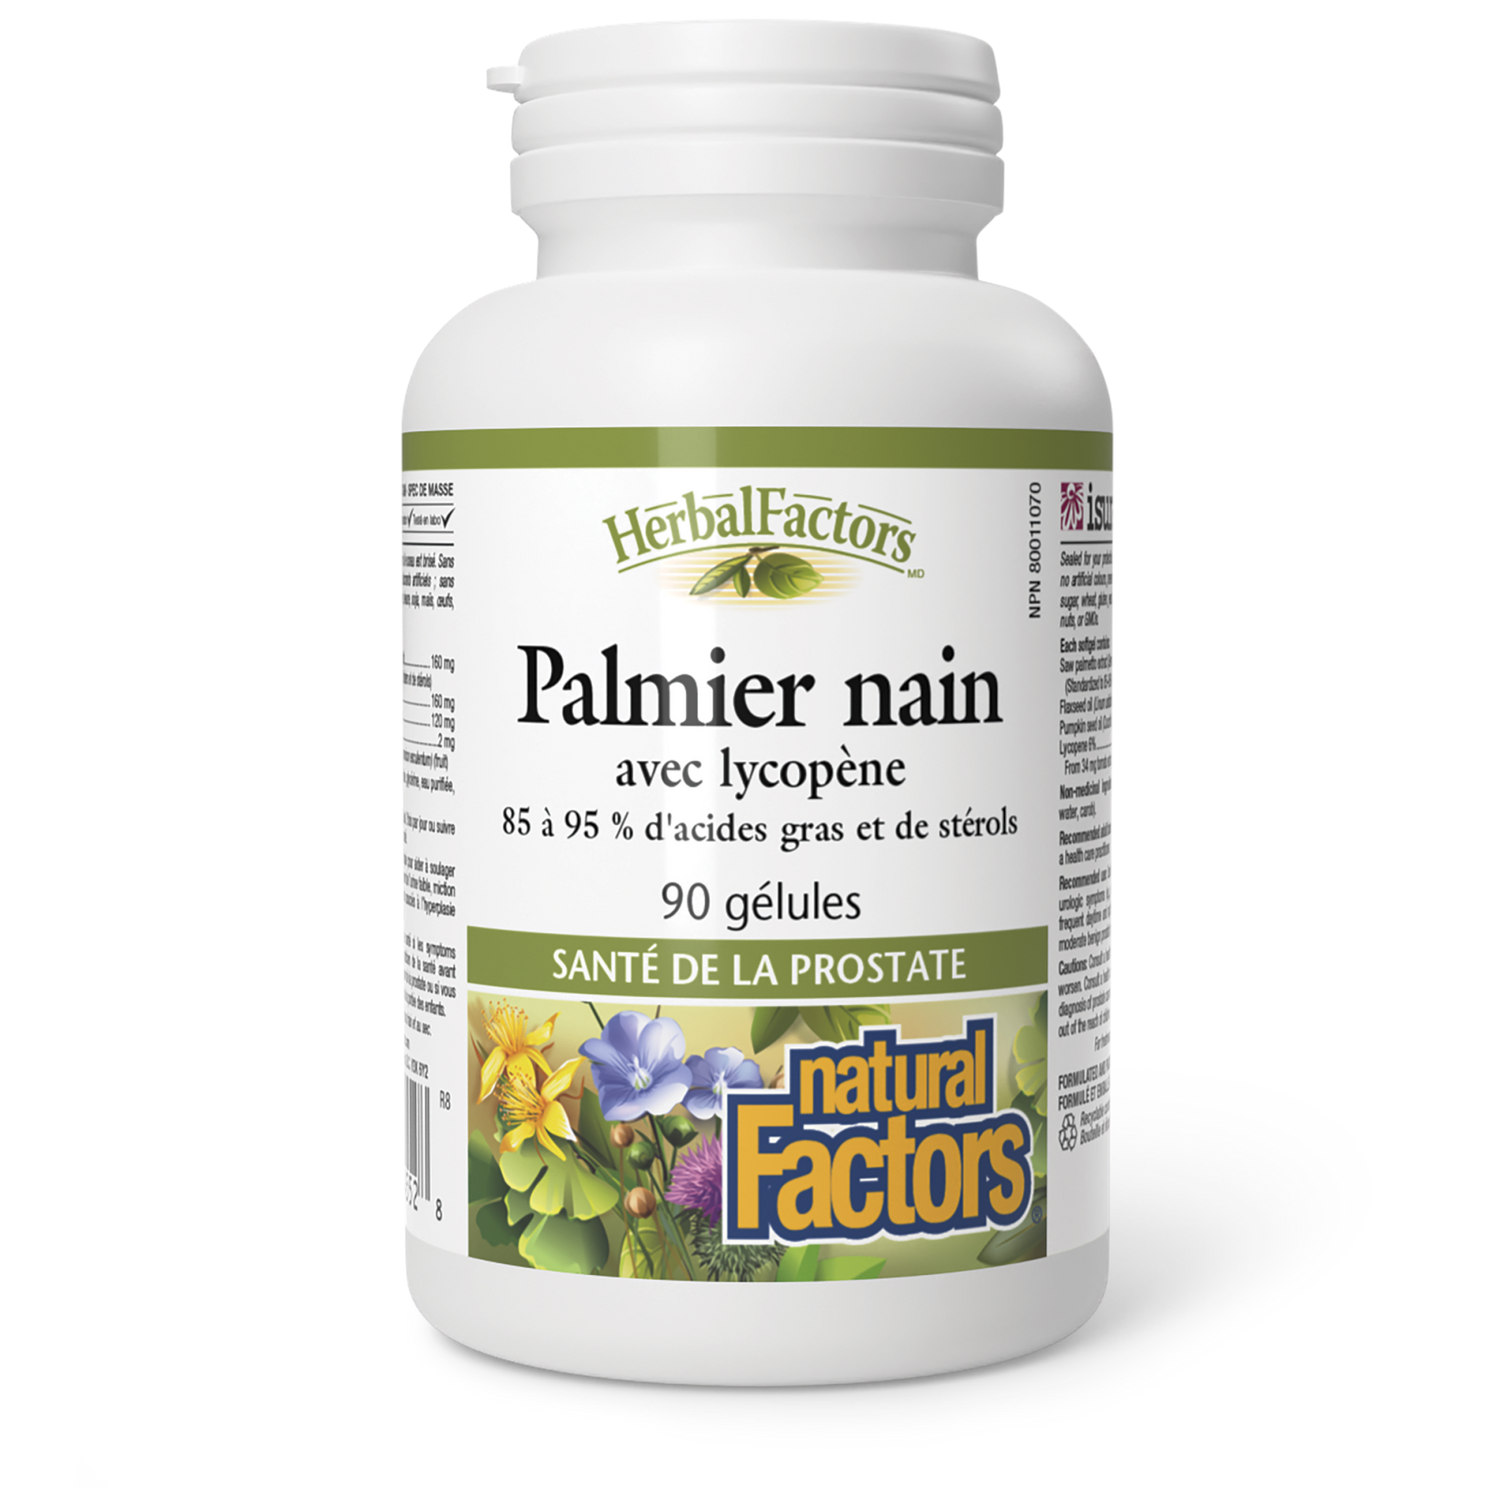 Palmier nain avec lycopène, HerbalFactors, Natural Factors|v|image|4552